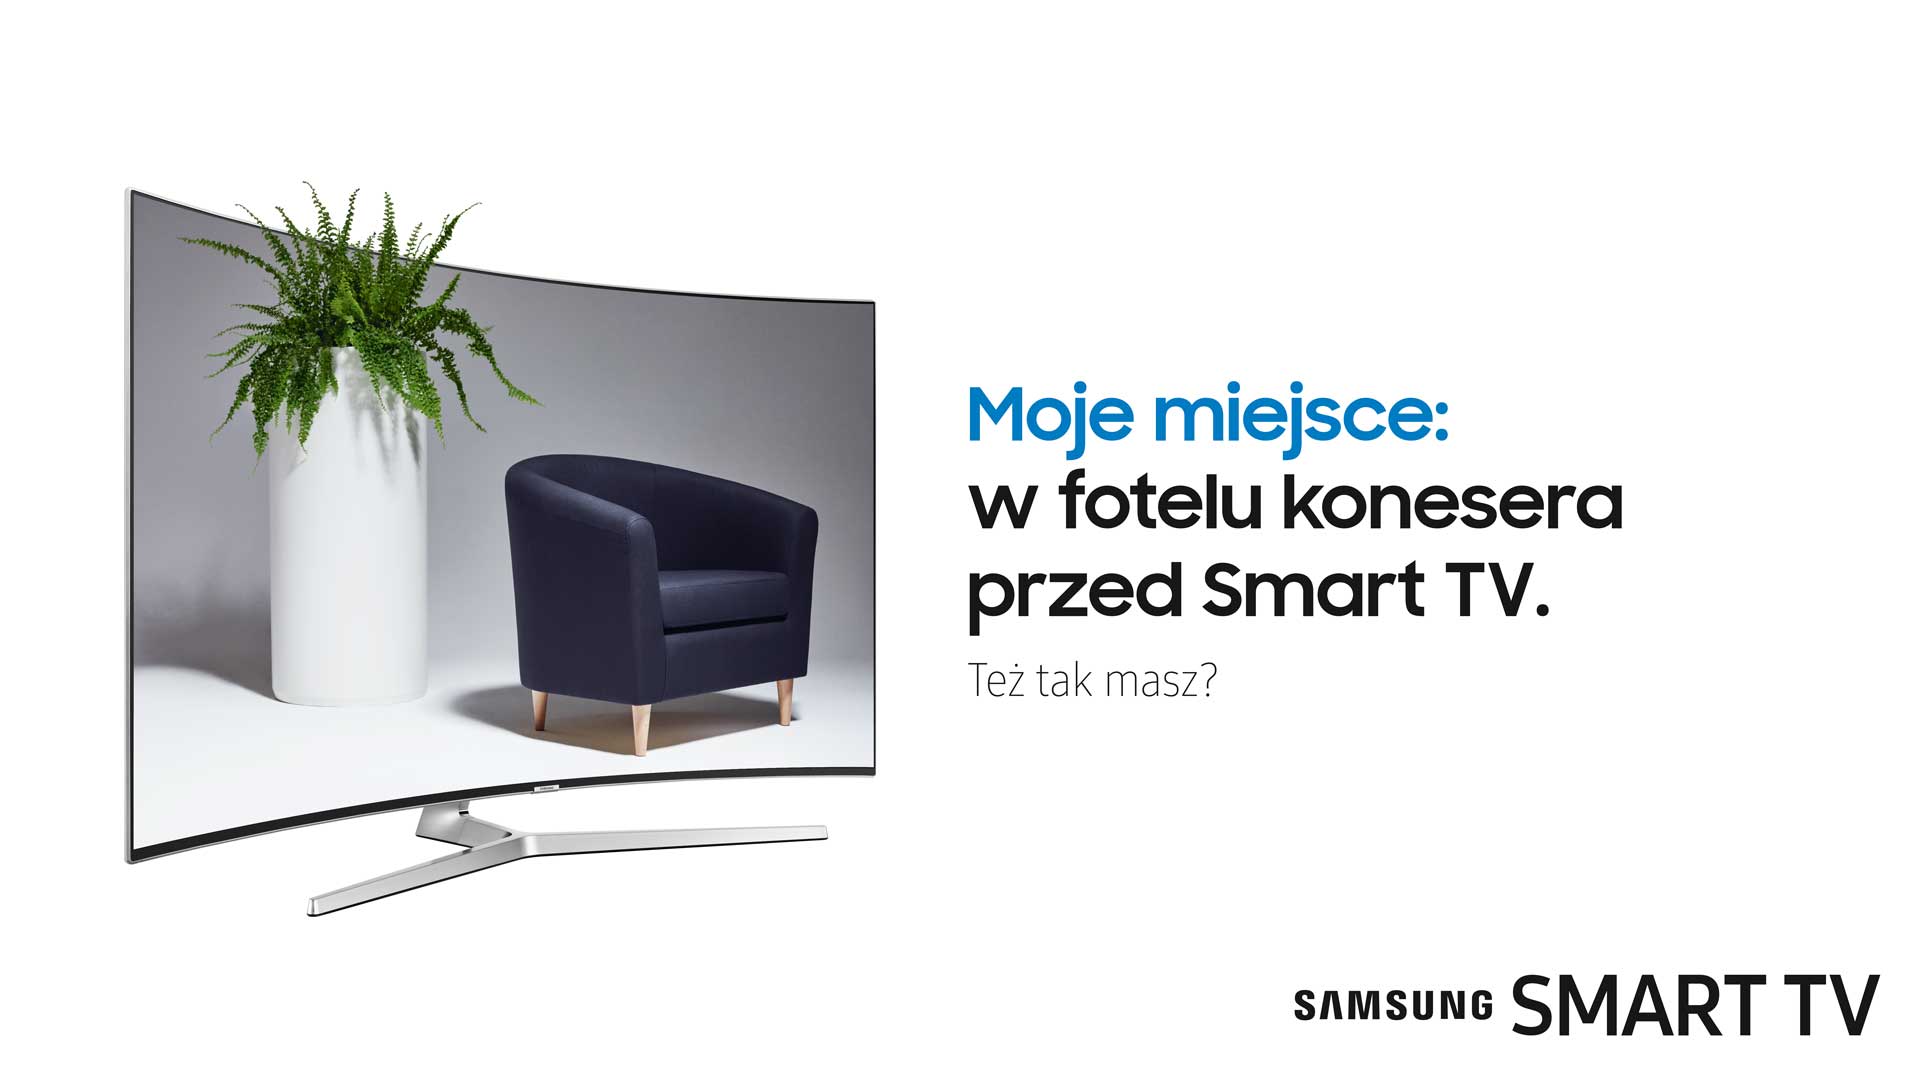 Studio konesera, czyli kulturalnie o Samsung Smart TV